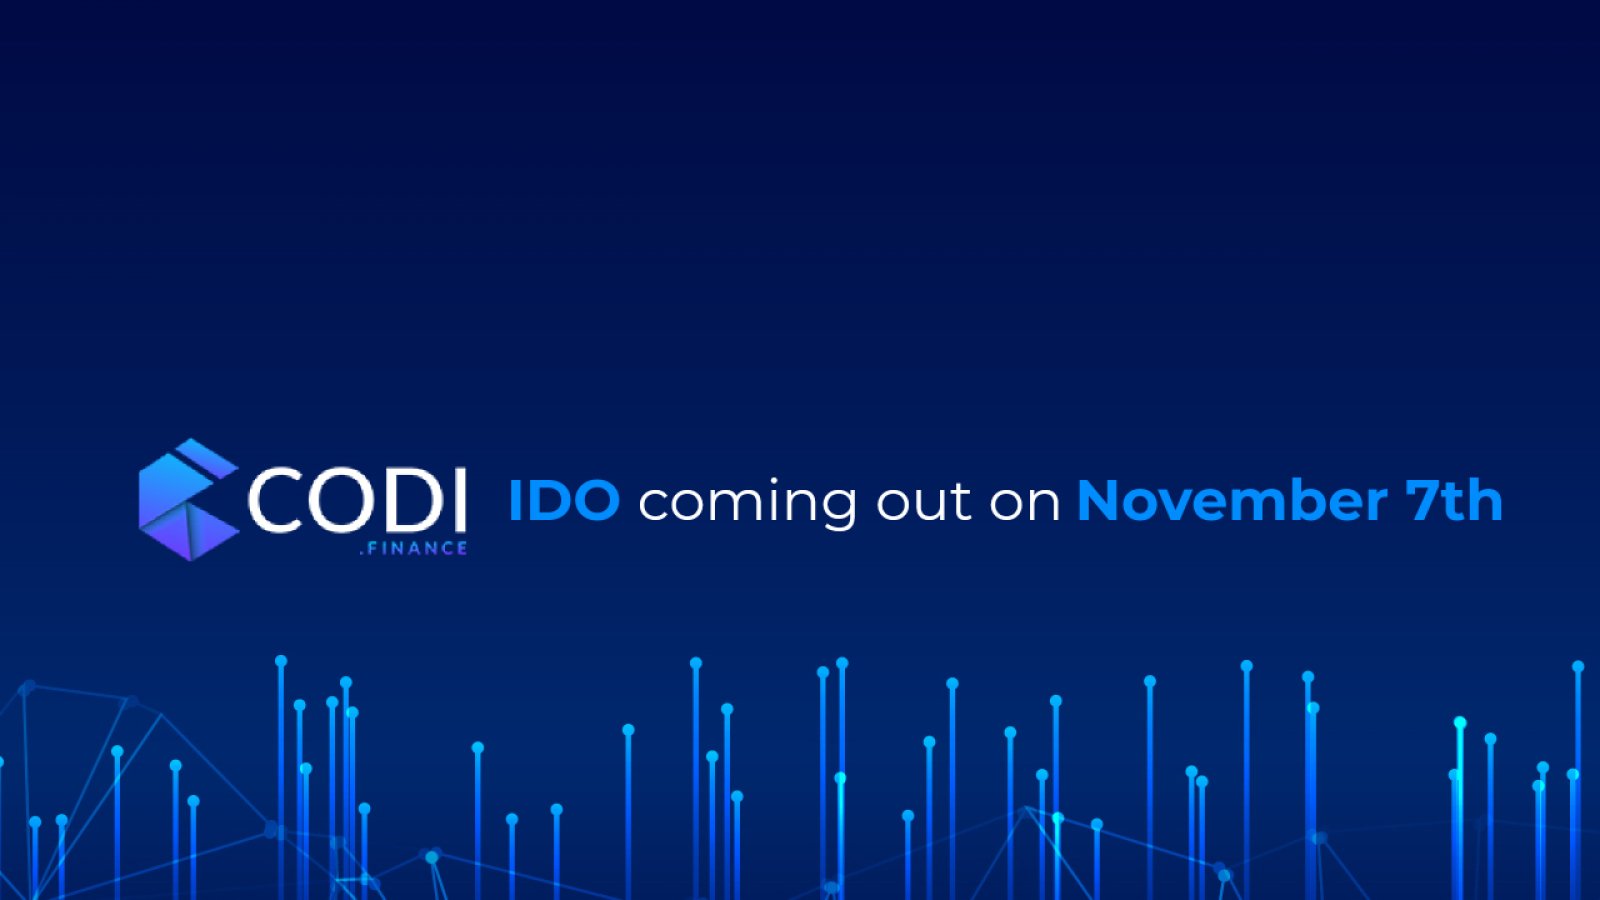 CODI Finance Announces IDO of Native Token “$CODI”